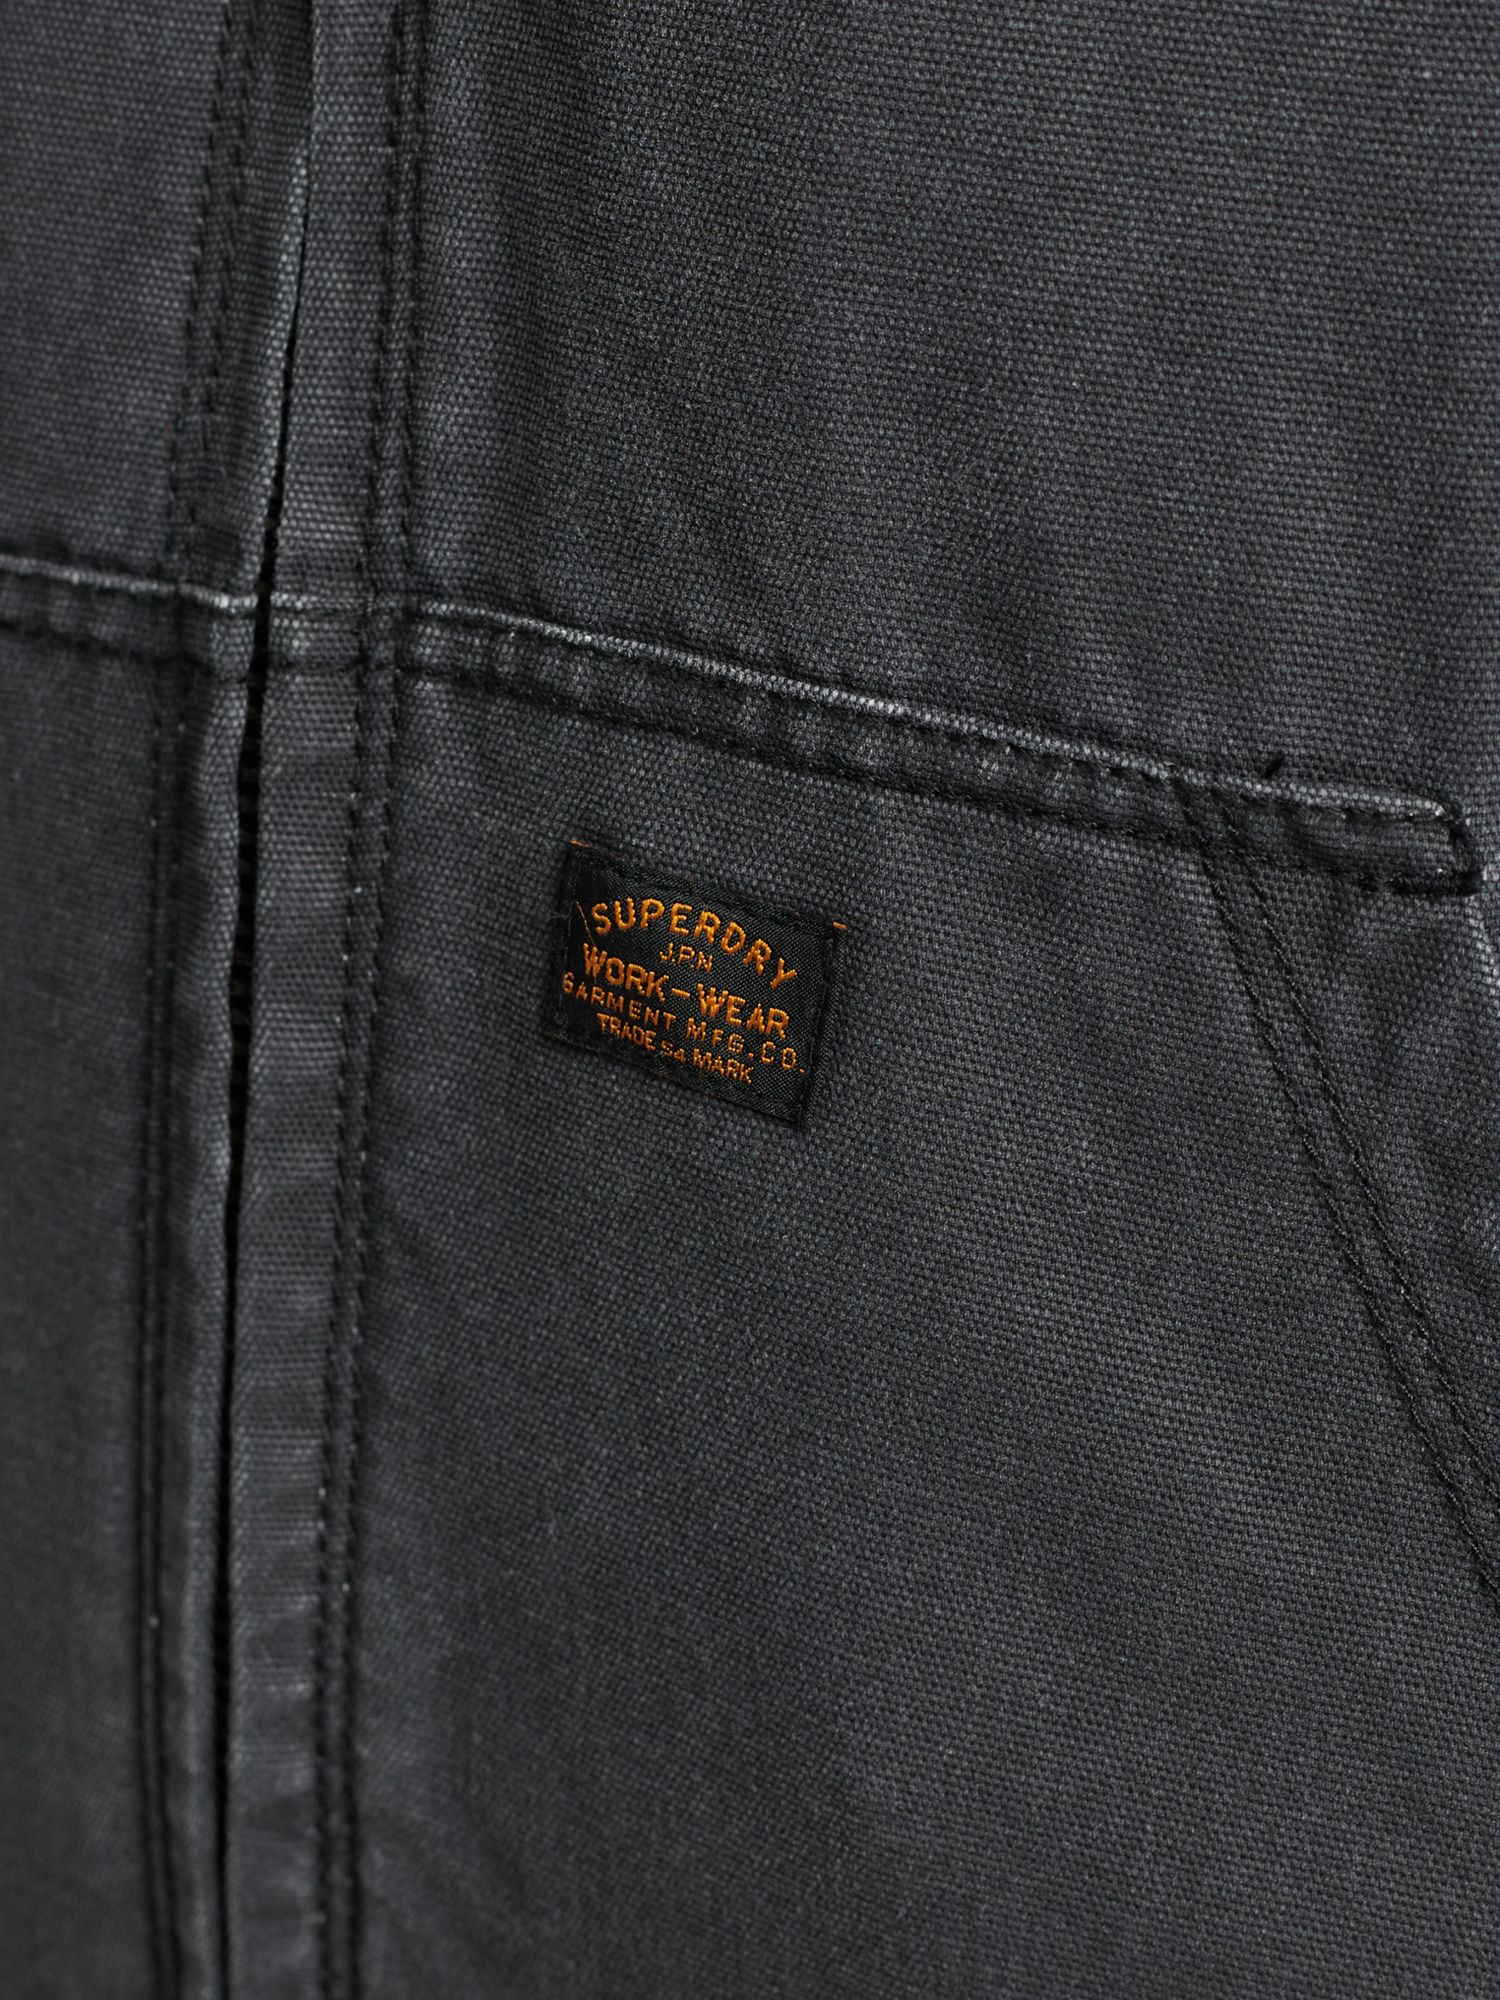 Superdry Workwear Hoodie Jacket, Bison Black at John Lewis & Partners